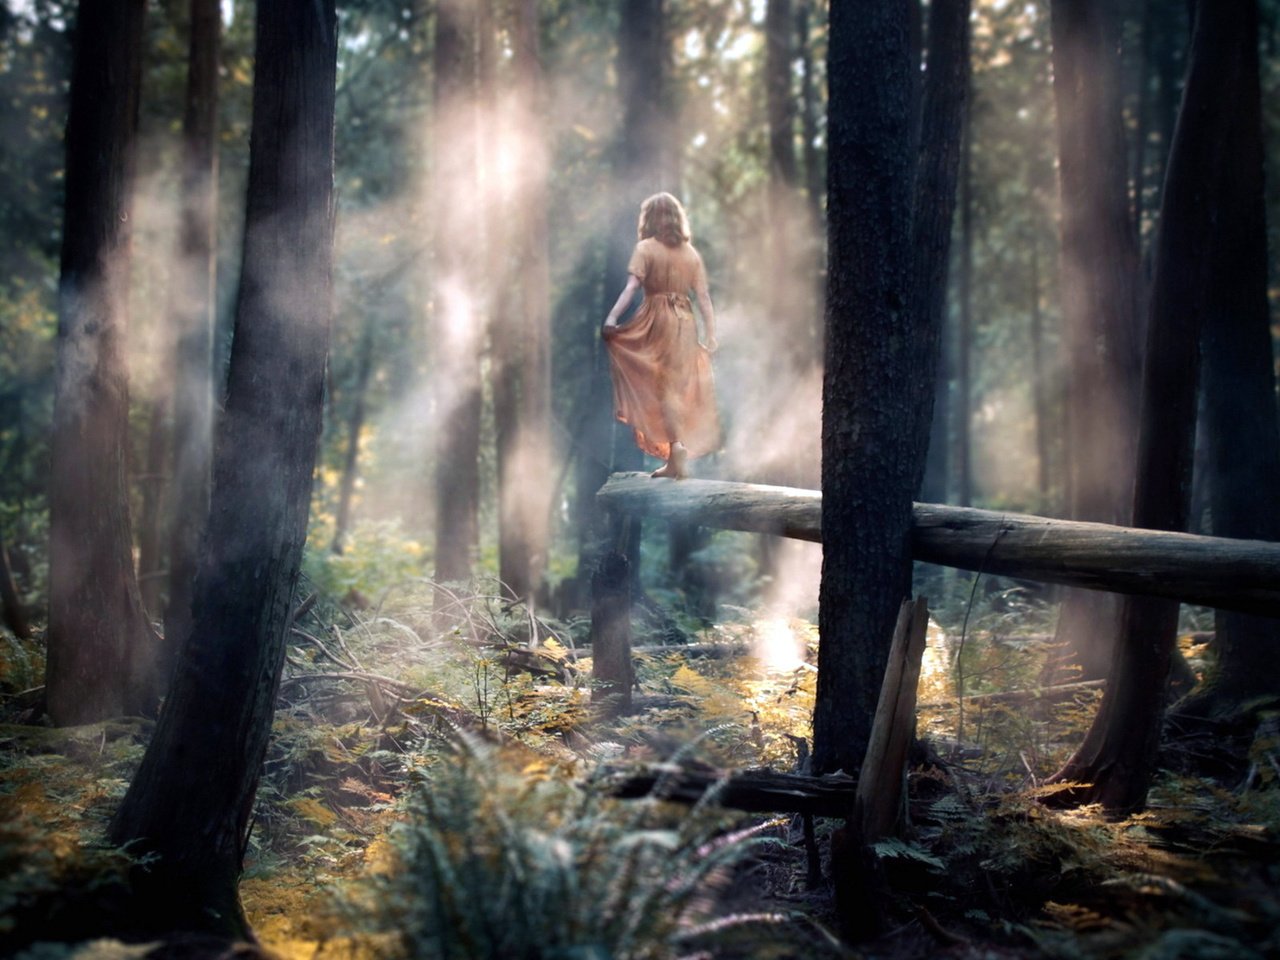 Писающая девушка на бревне в лесу